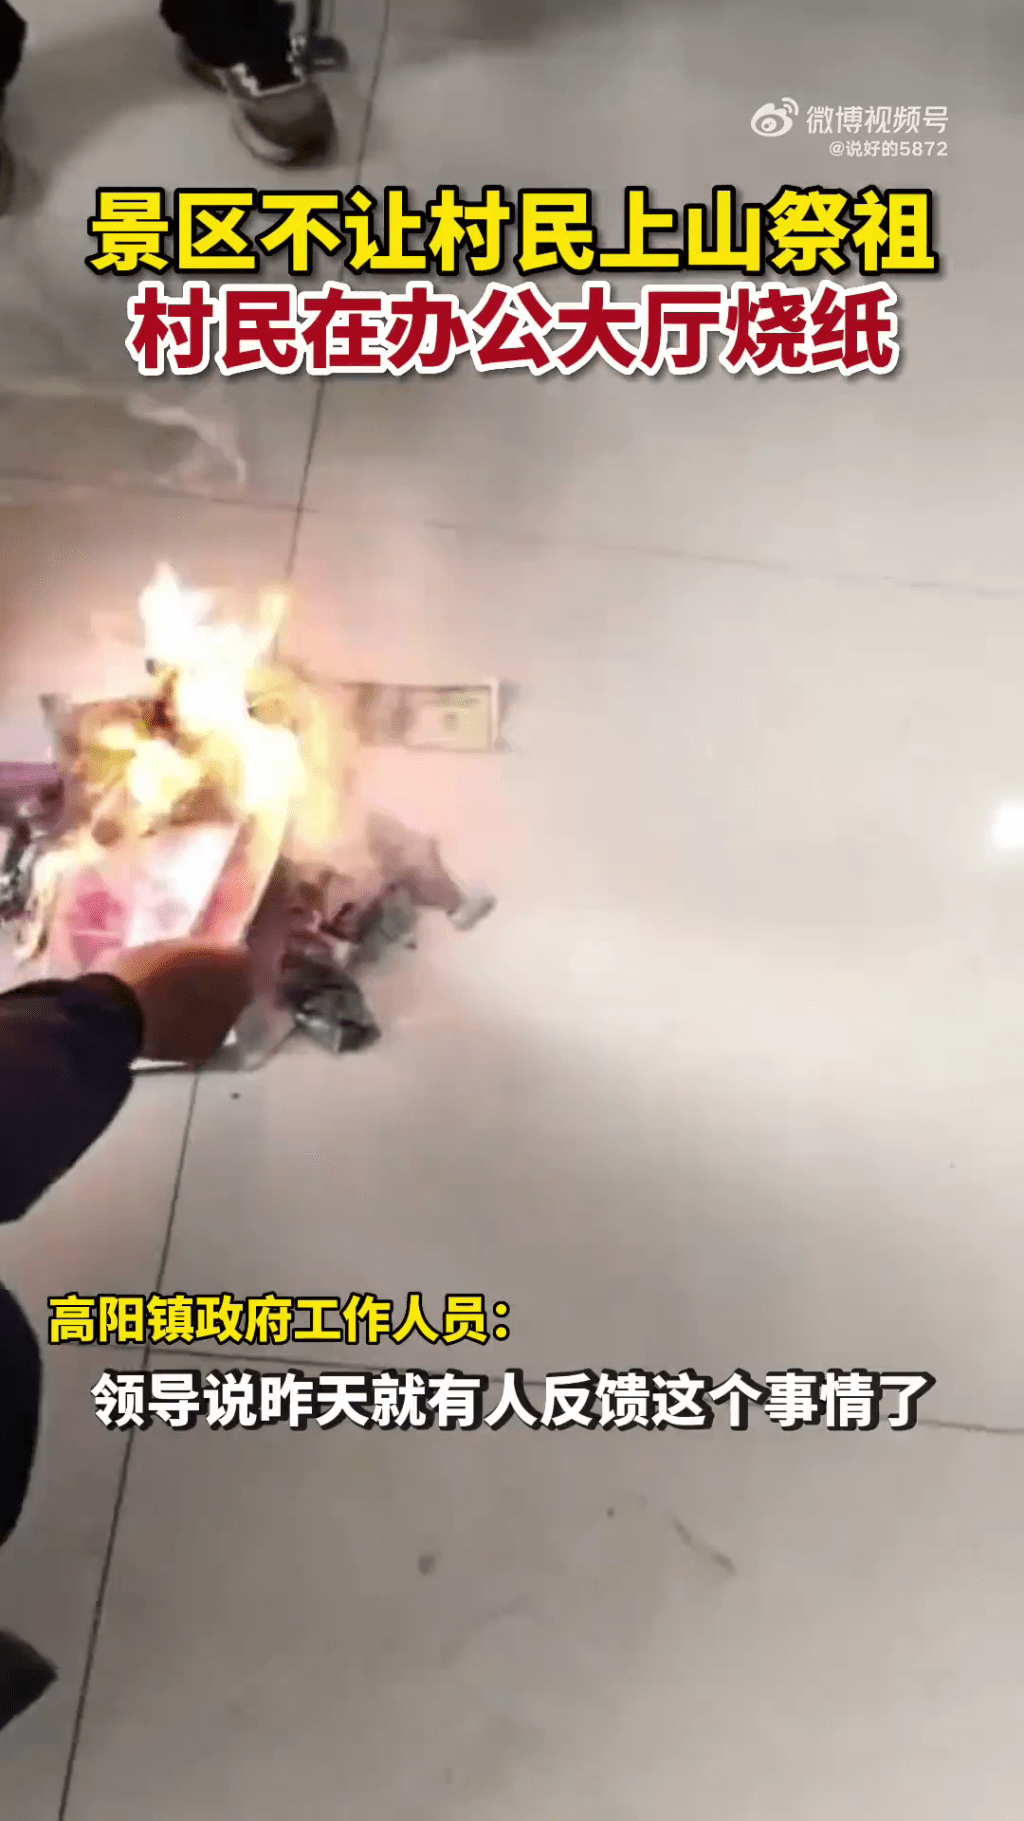 影片顯示有人在金龍山景區大廳燒紙。